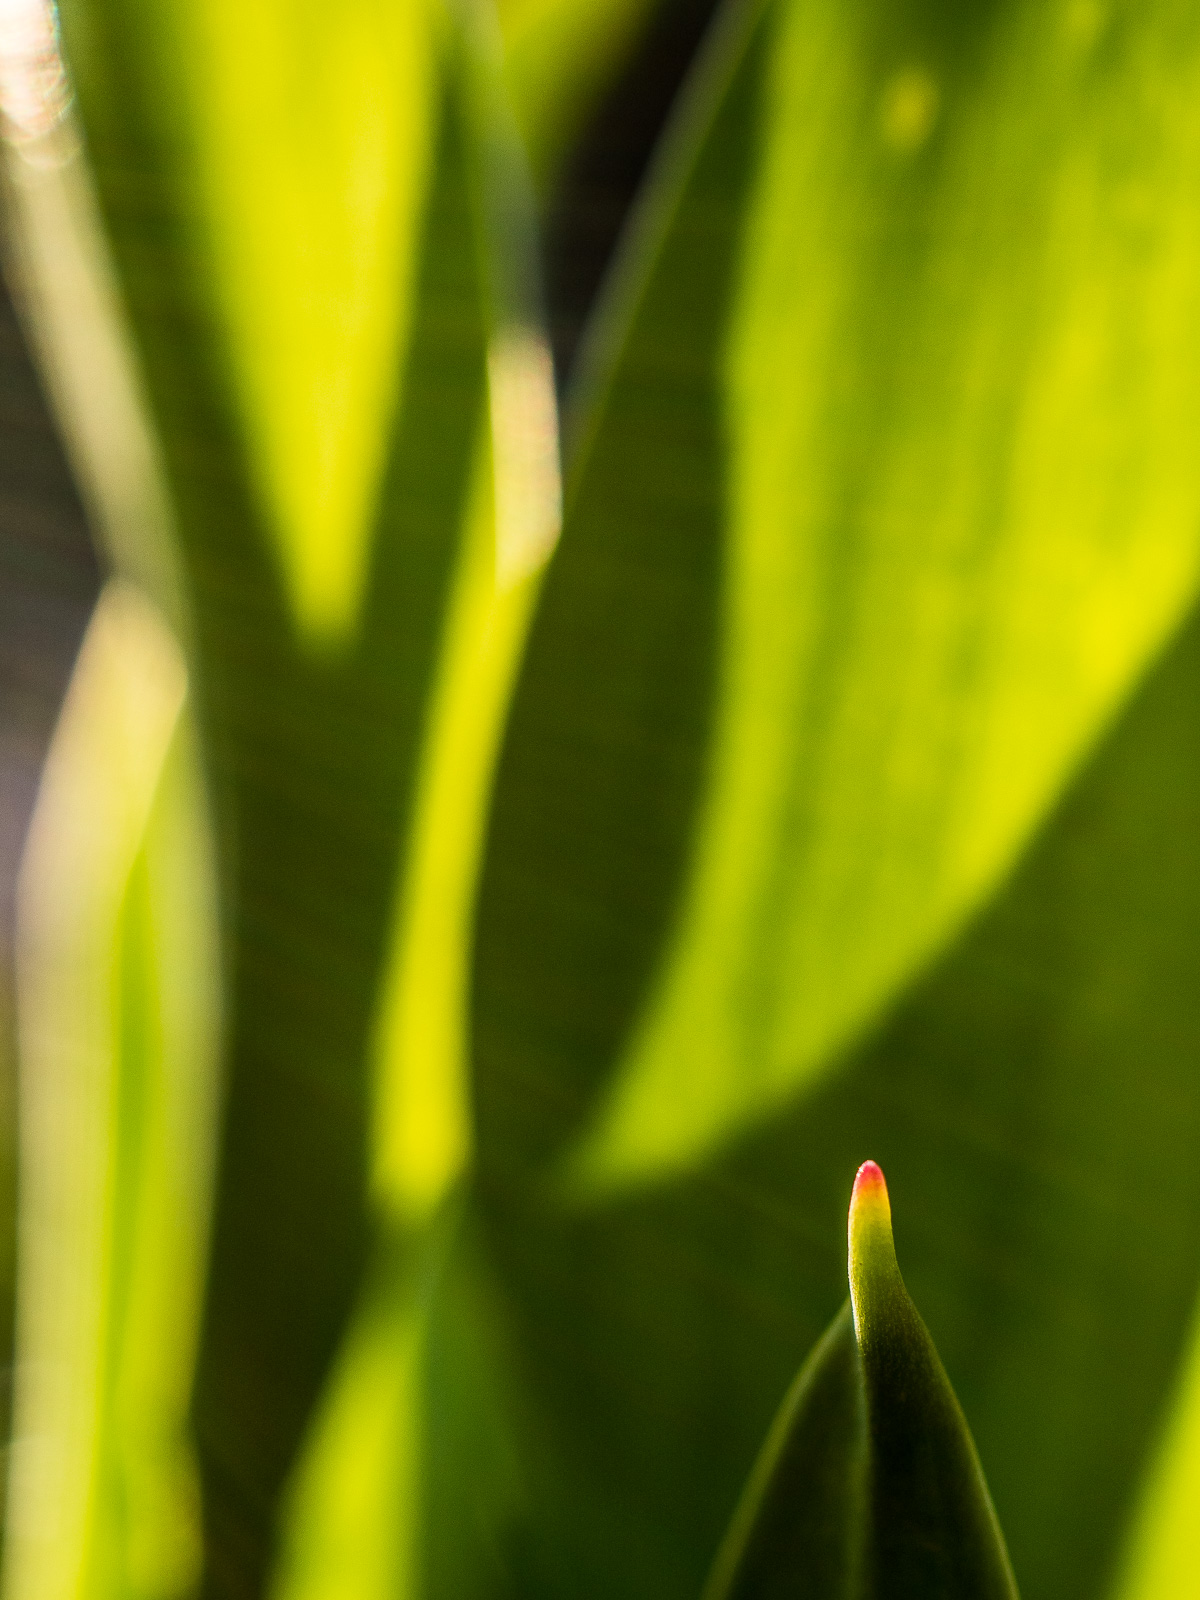 Nahaufnahme von Blättern einer Tulpe, im vordergrund scharf eine Blattspitze mit roter Kuppe am Ende